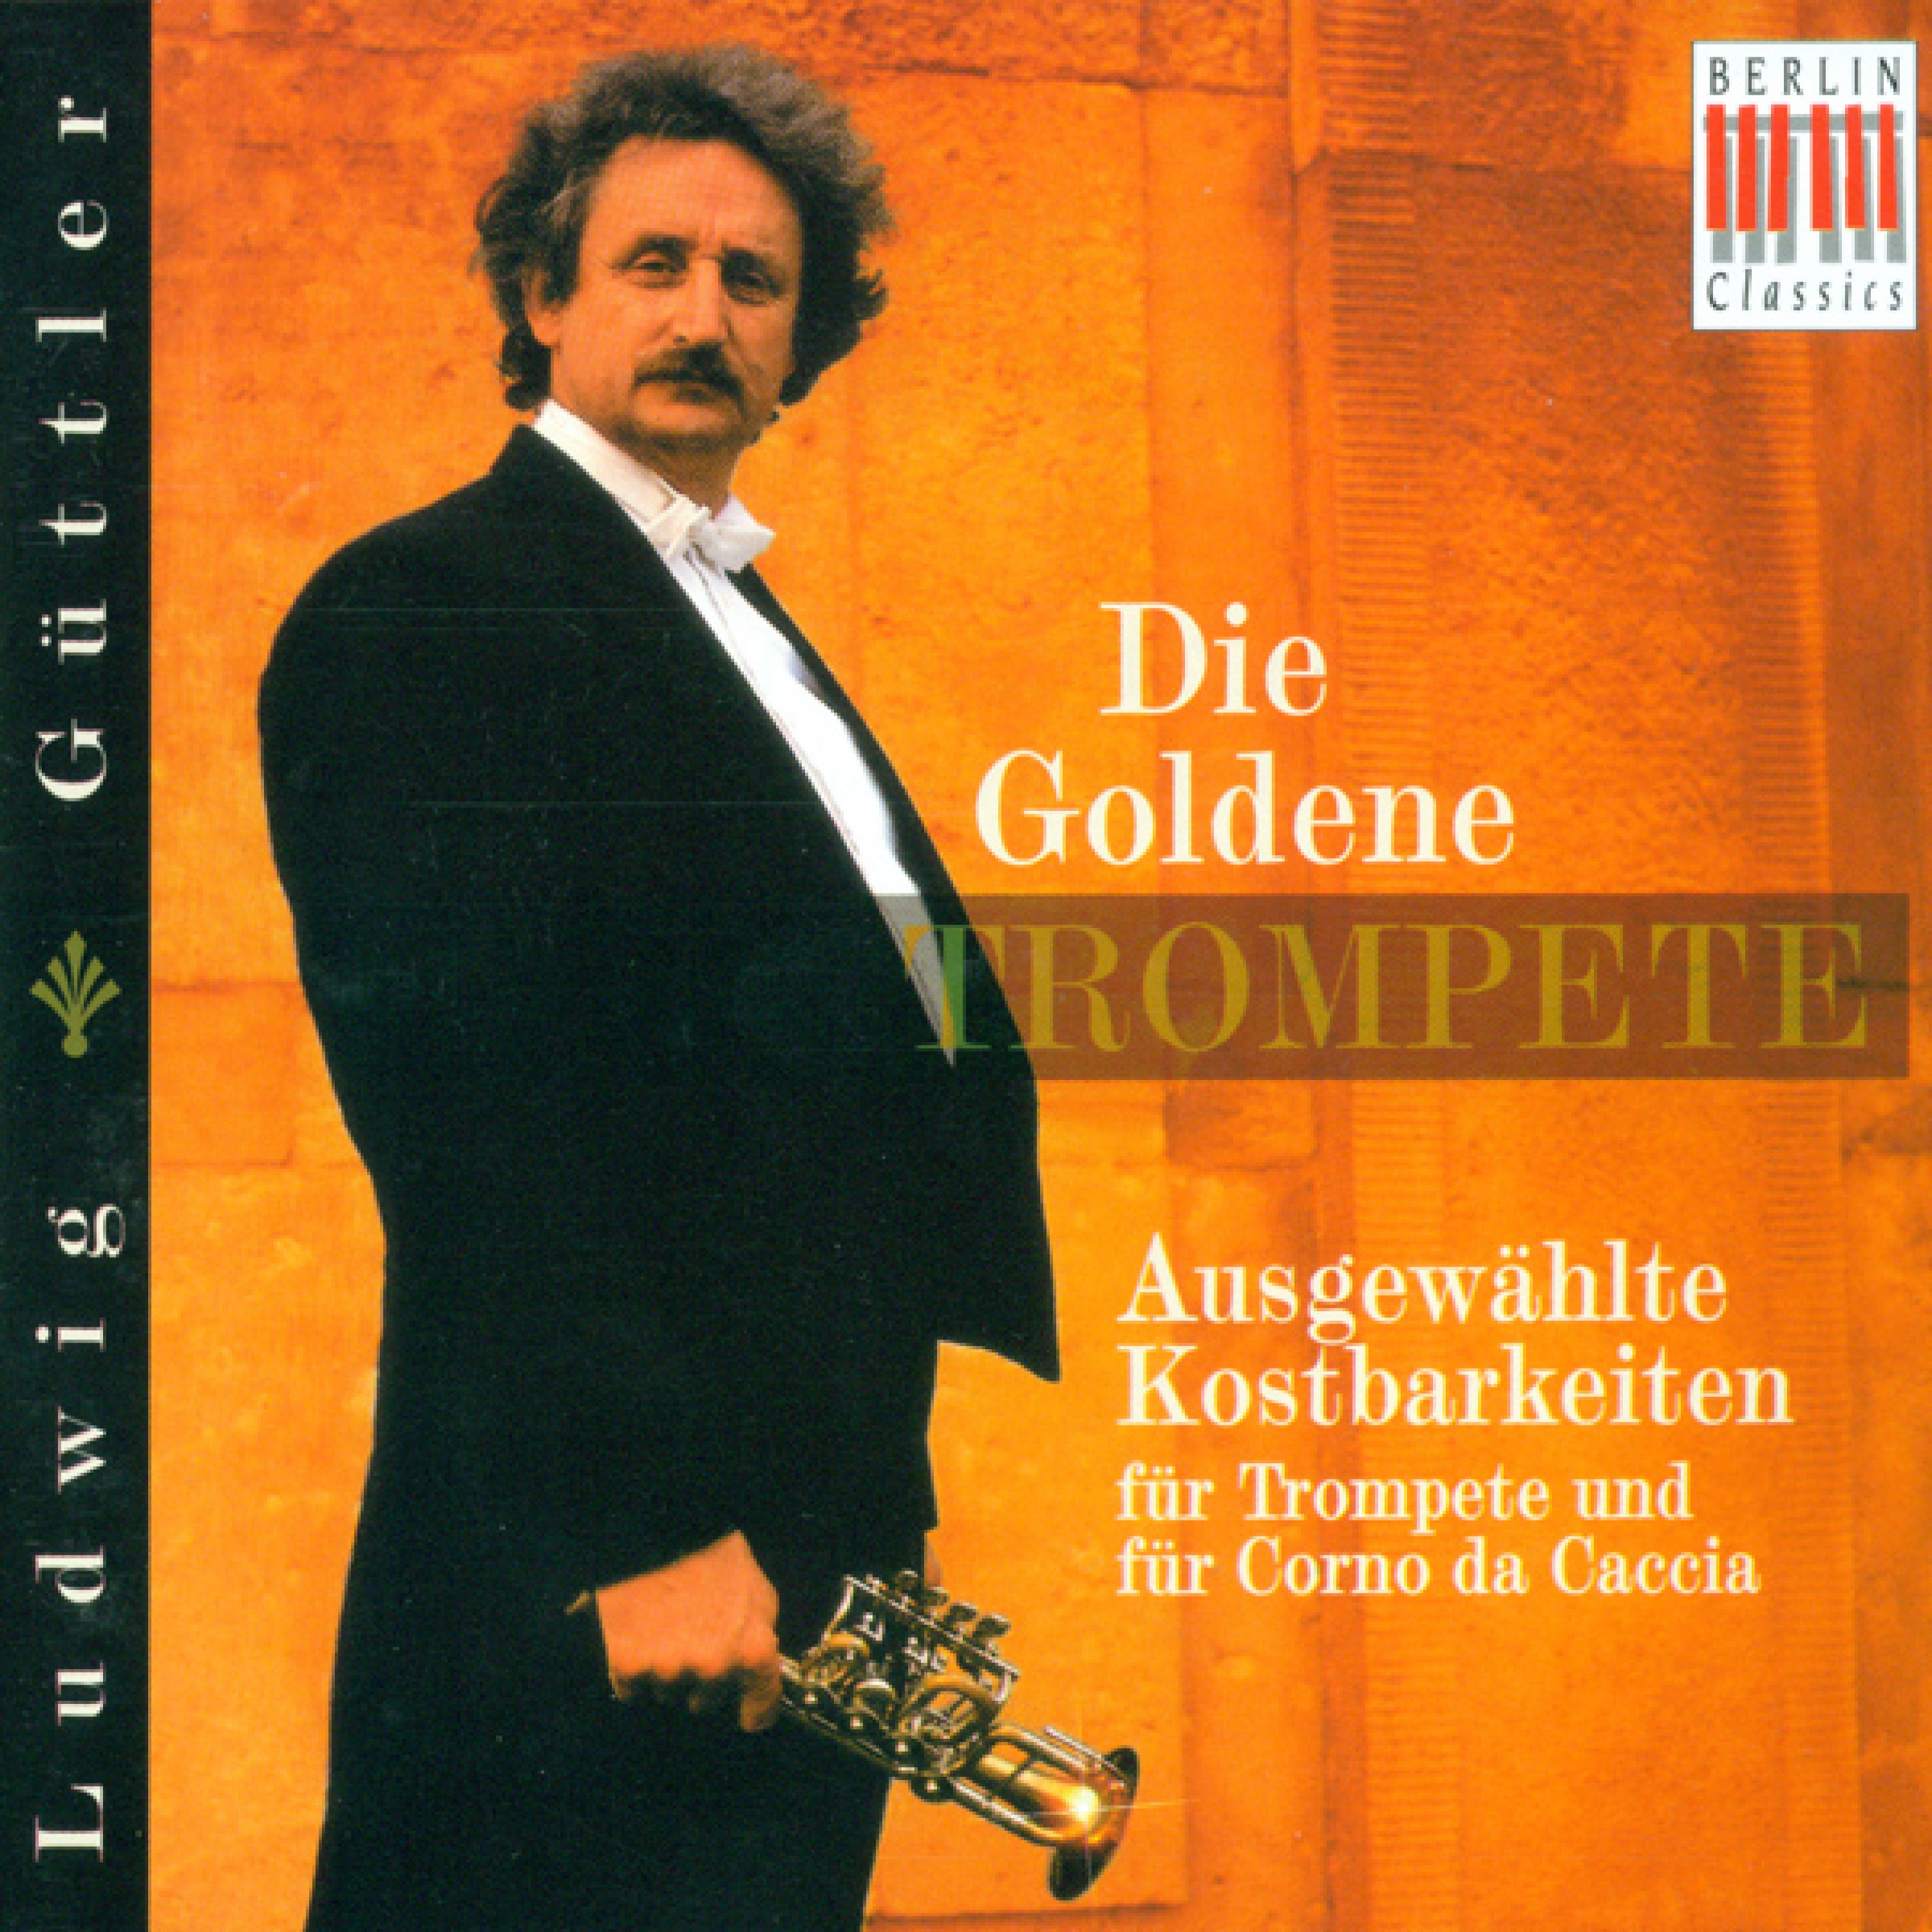 Concerto for 2 Trumpets in D major (arr. L. Guttler): II. Andante (arr. L. Guttler)